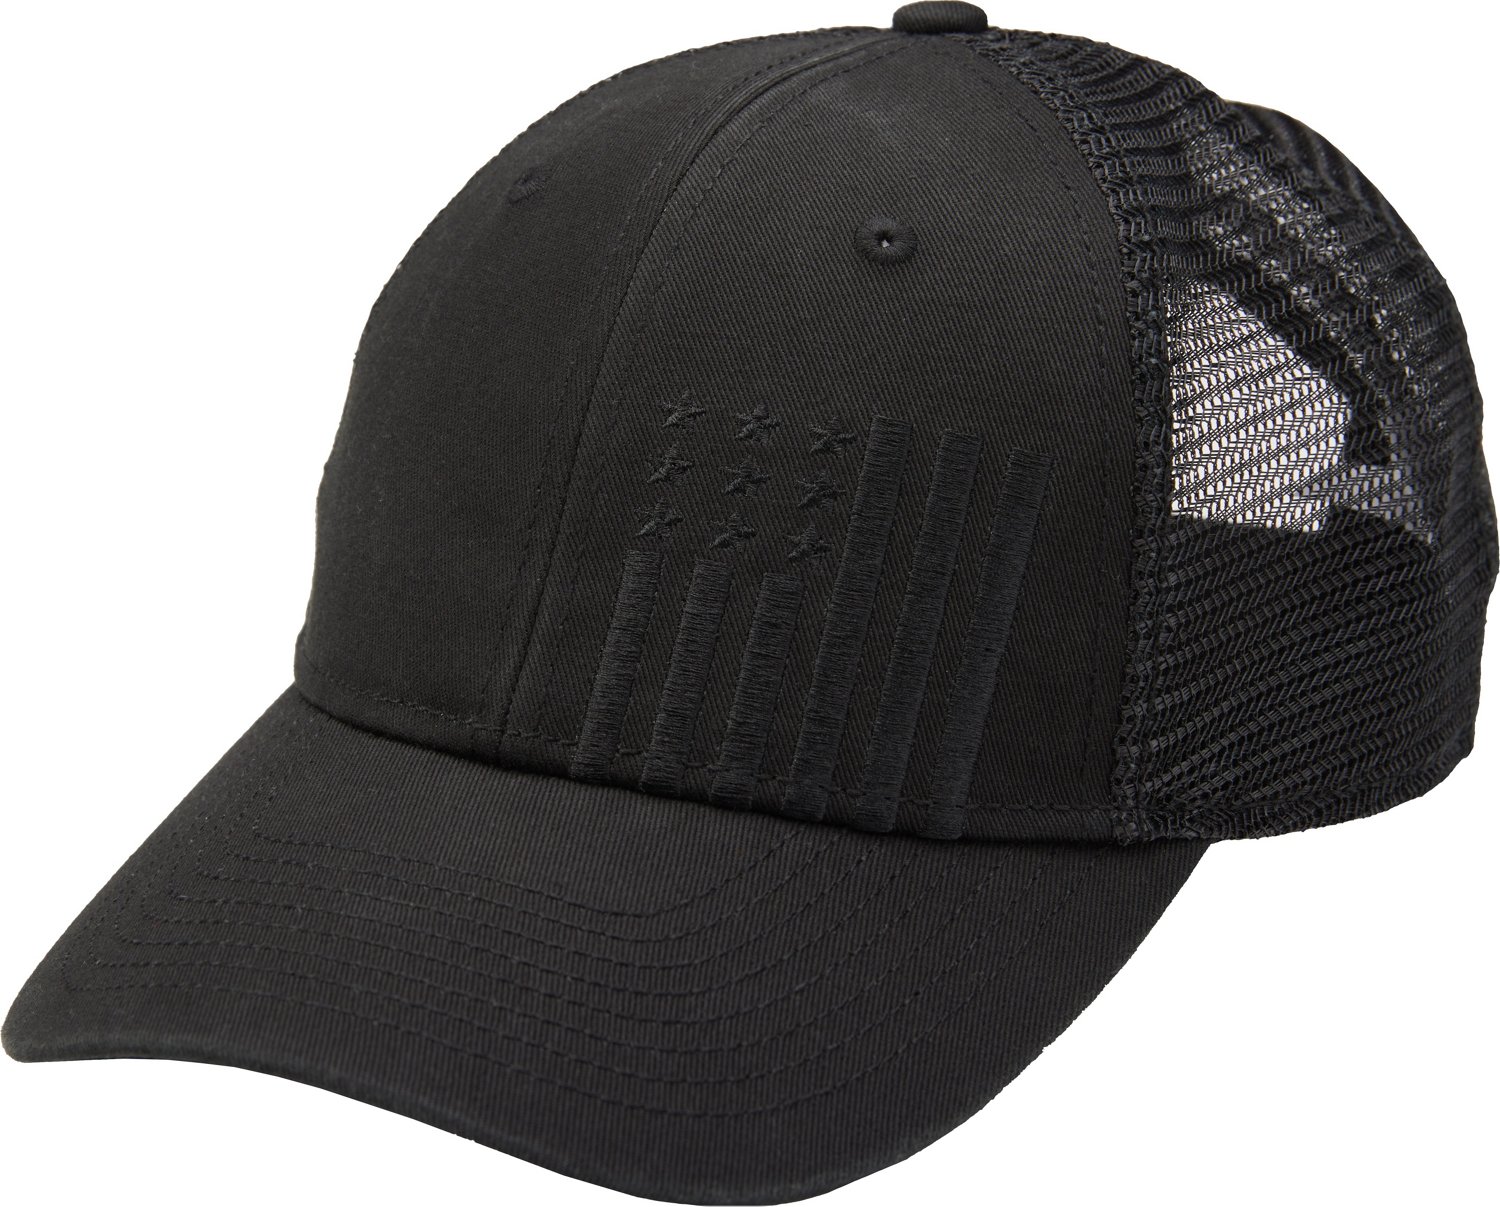 Men's Sports Hats + Caps